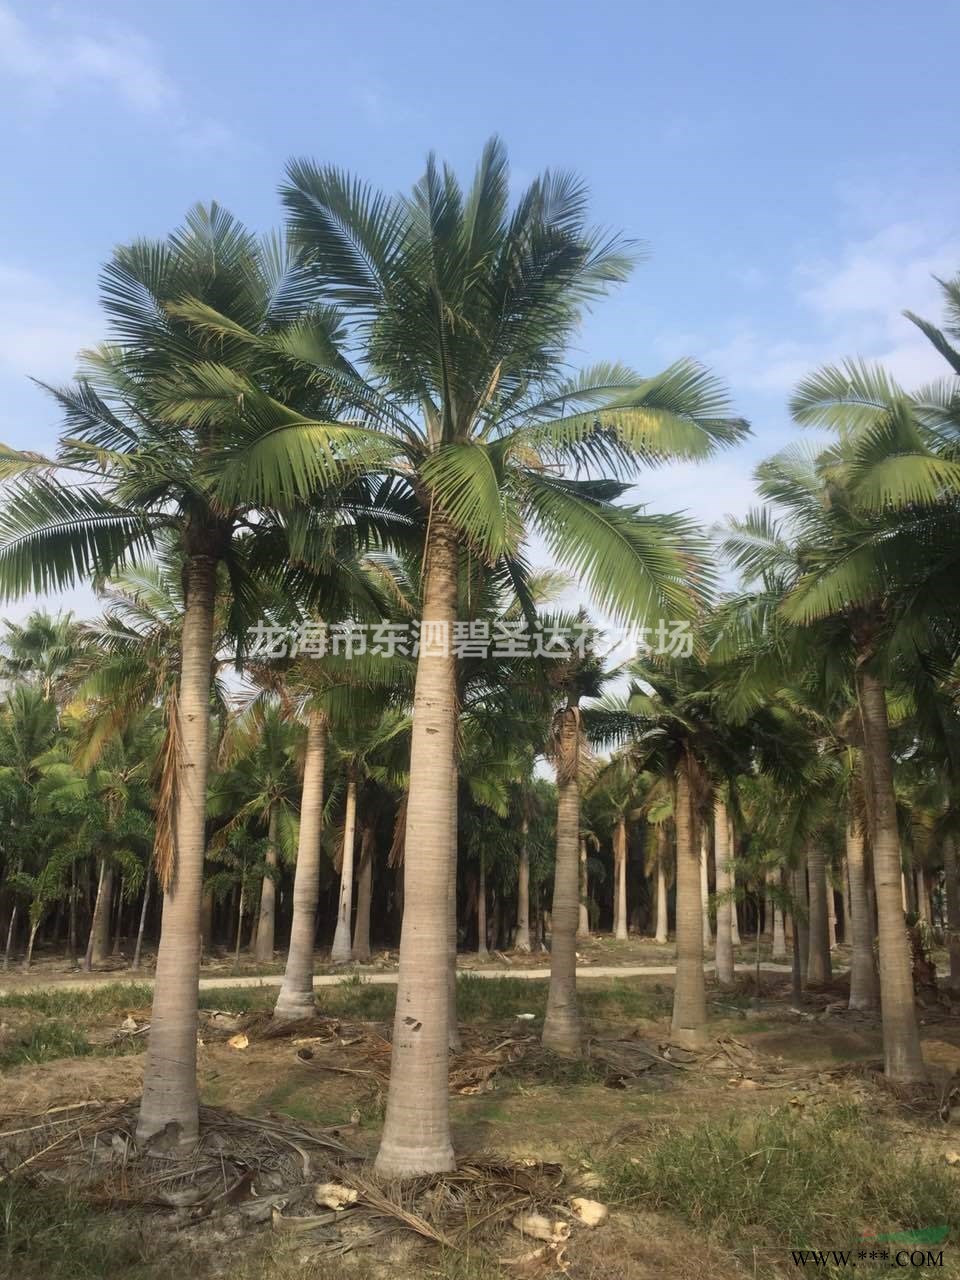 福建漳州榕树造型桩景基地各种规格大量批发供应 自家货源